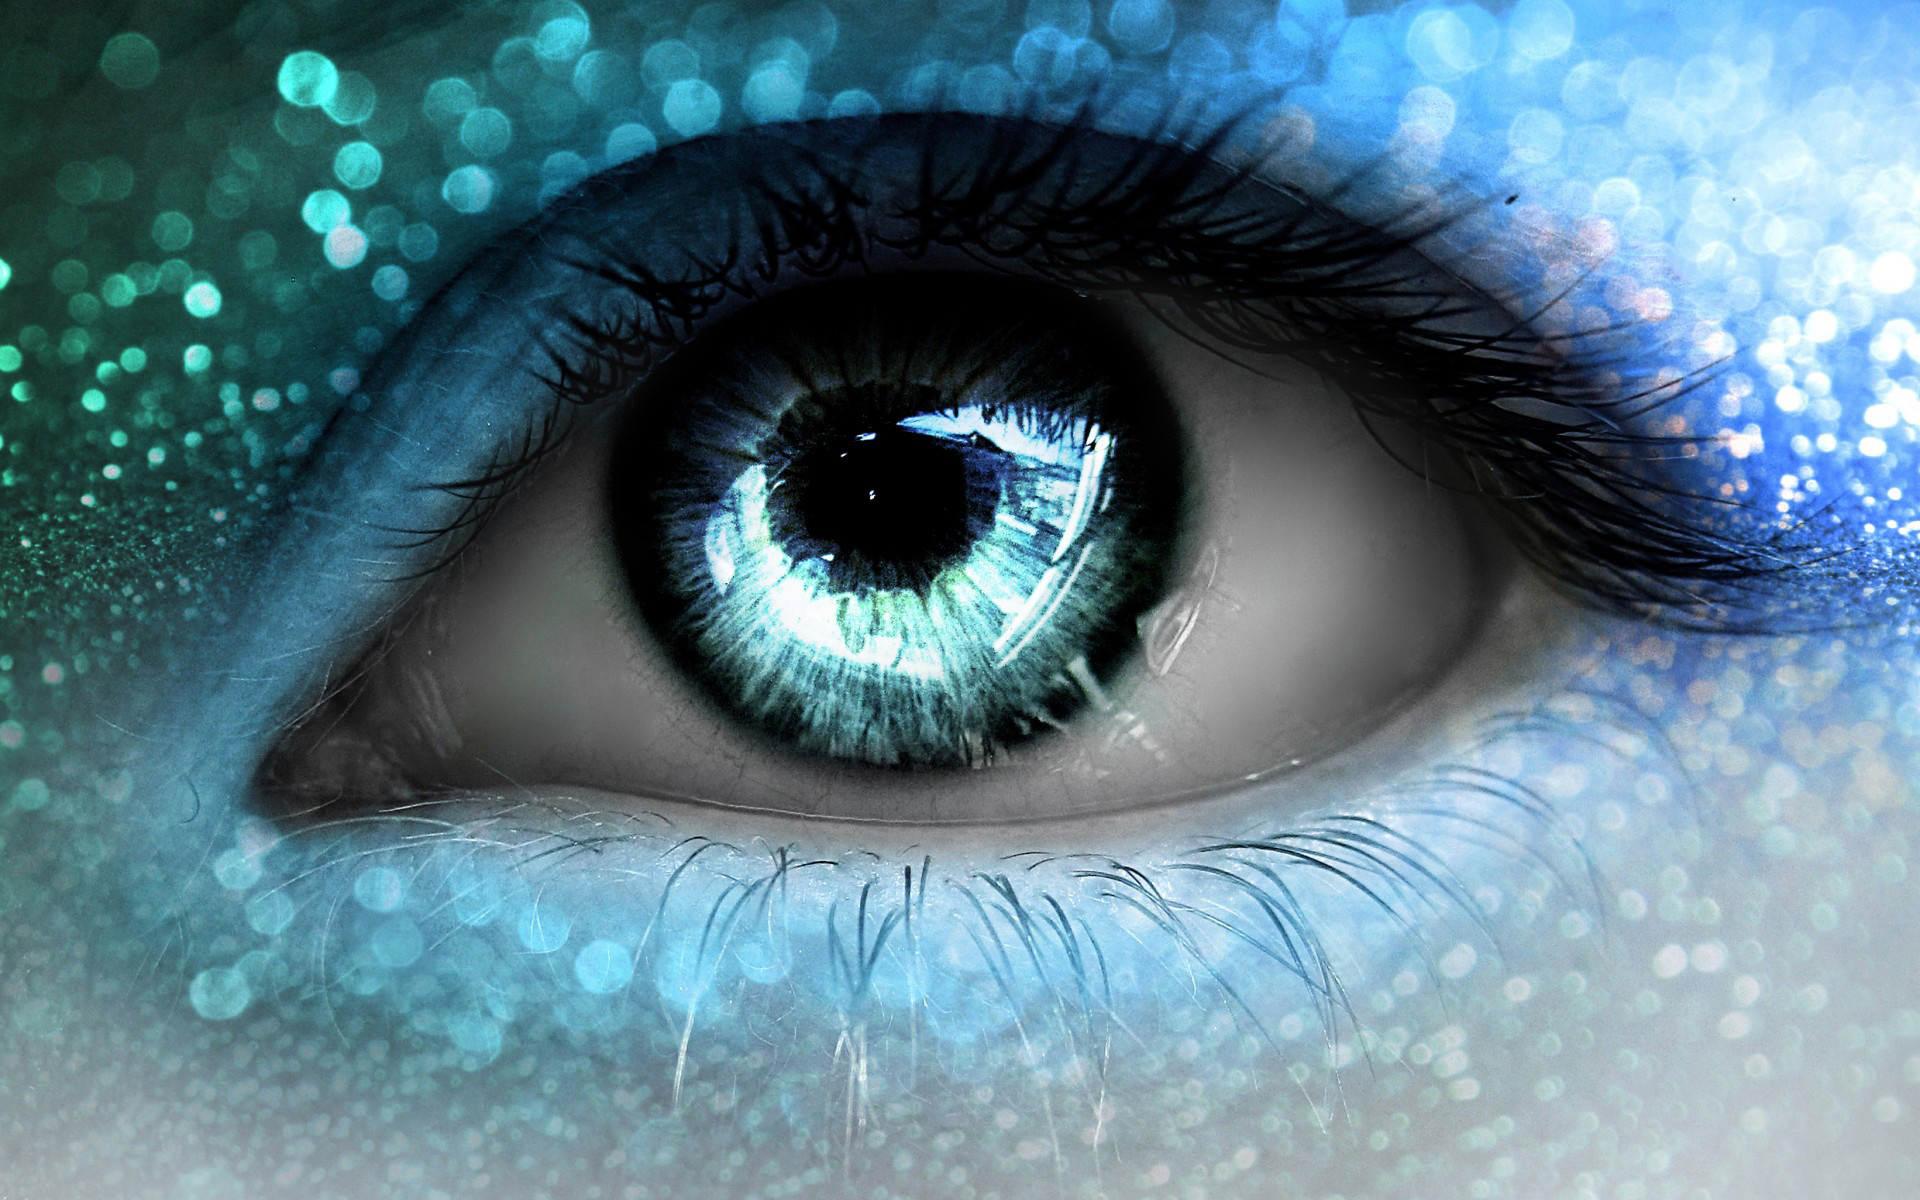  دانلود عکس چشم آبی با سایه خیلی زیبا برای پروفایل و پس زمینه